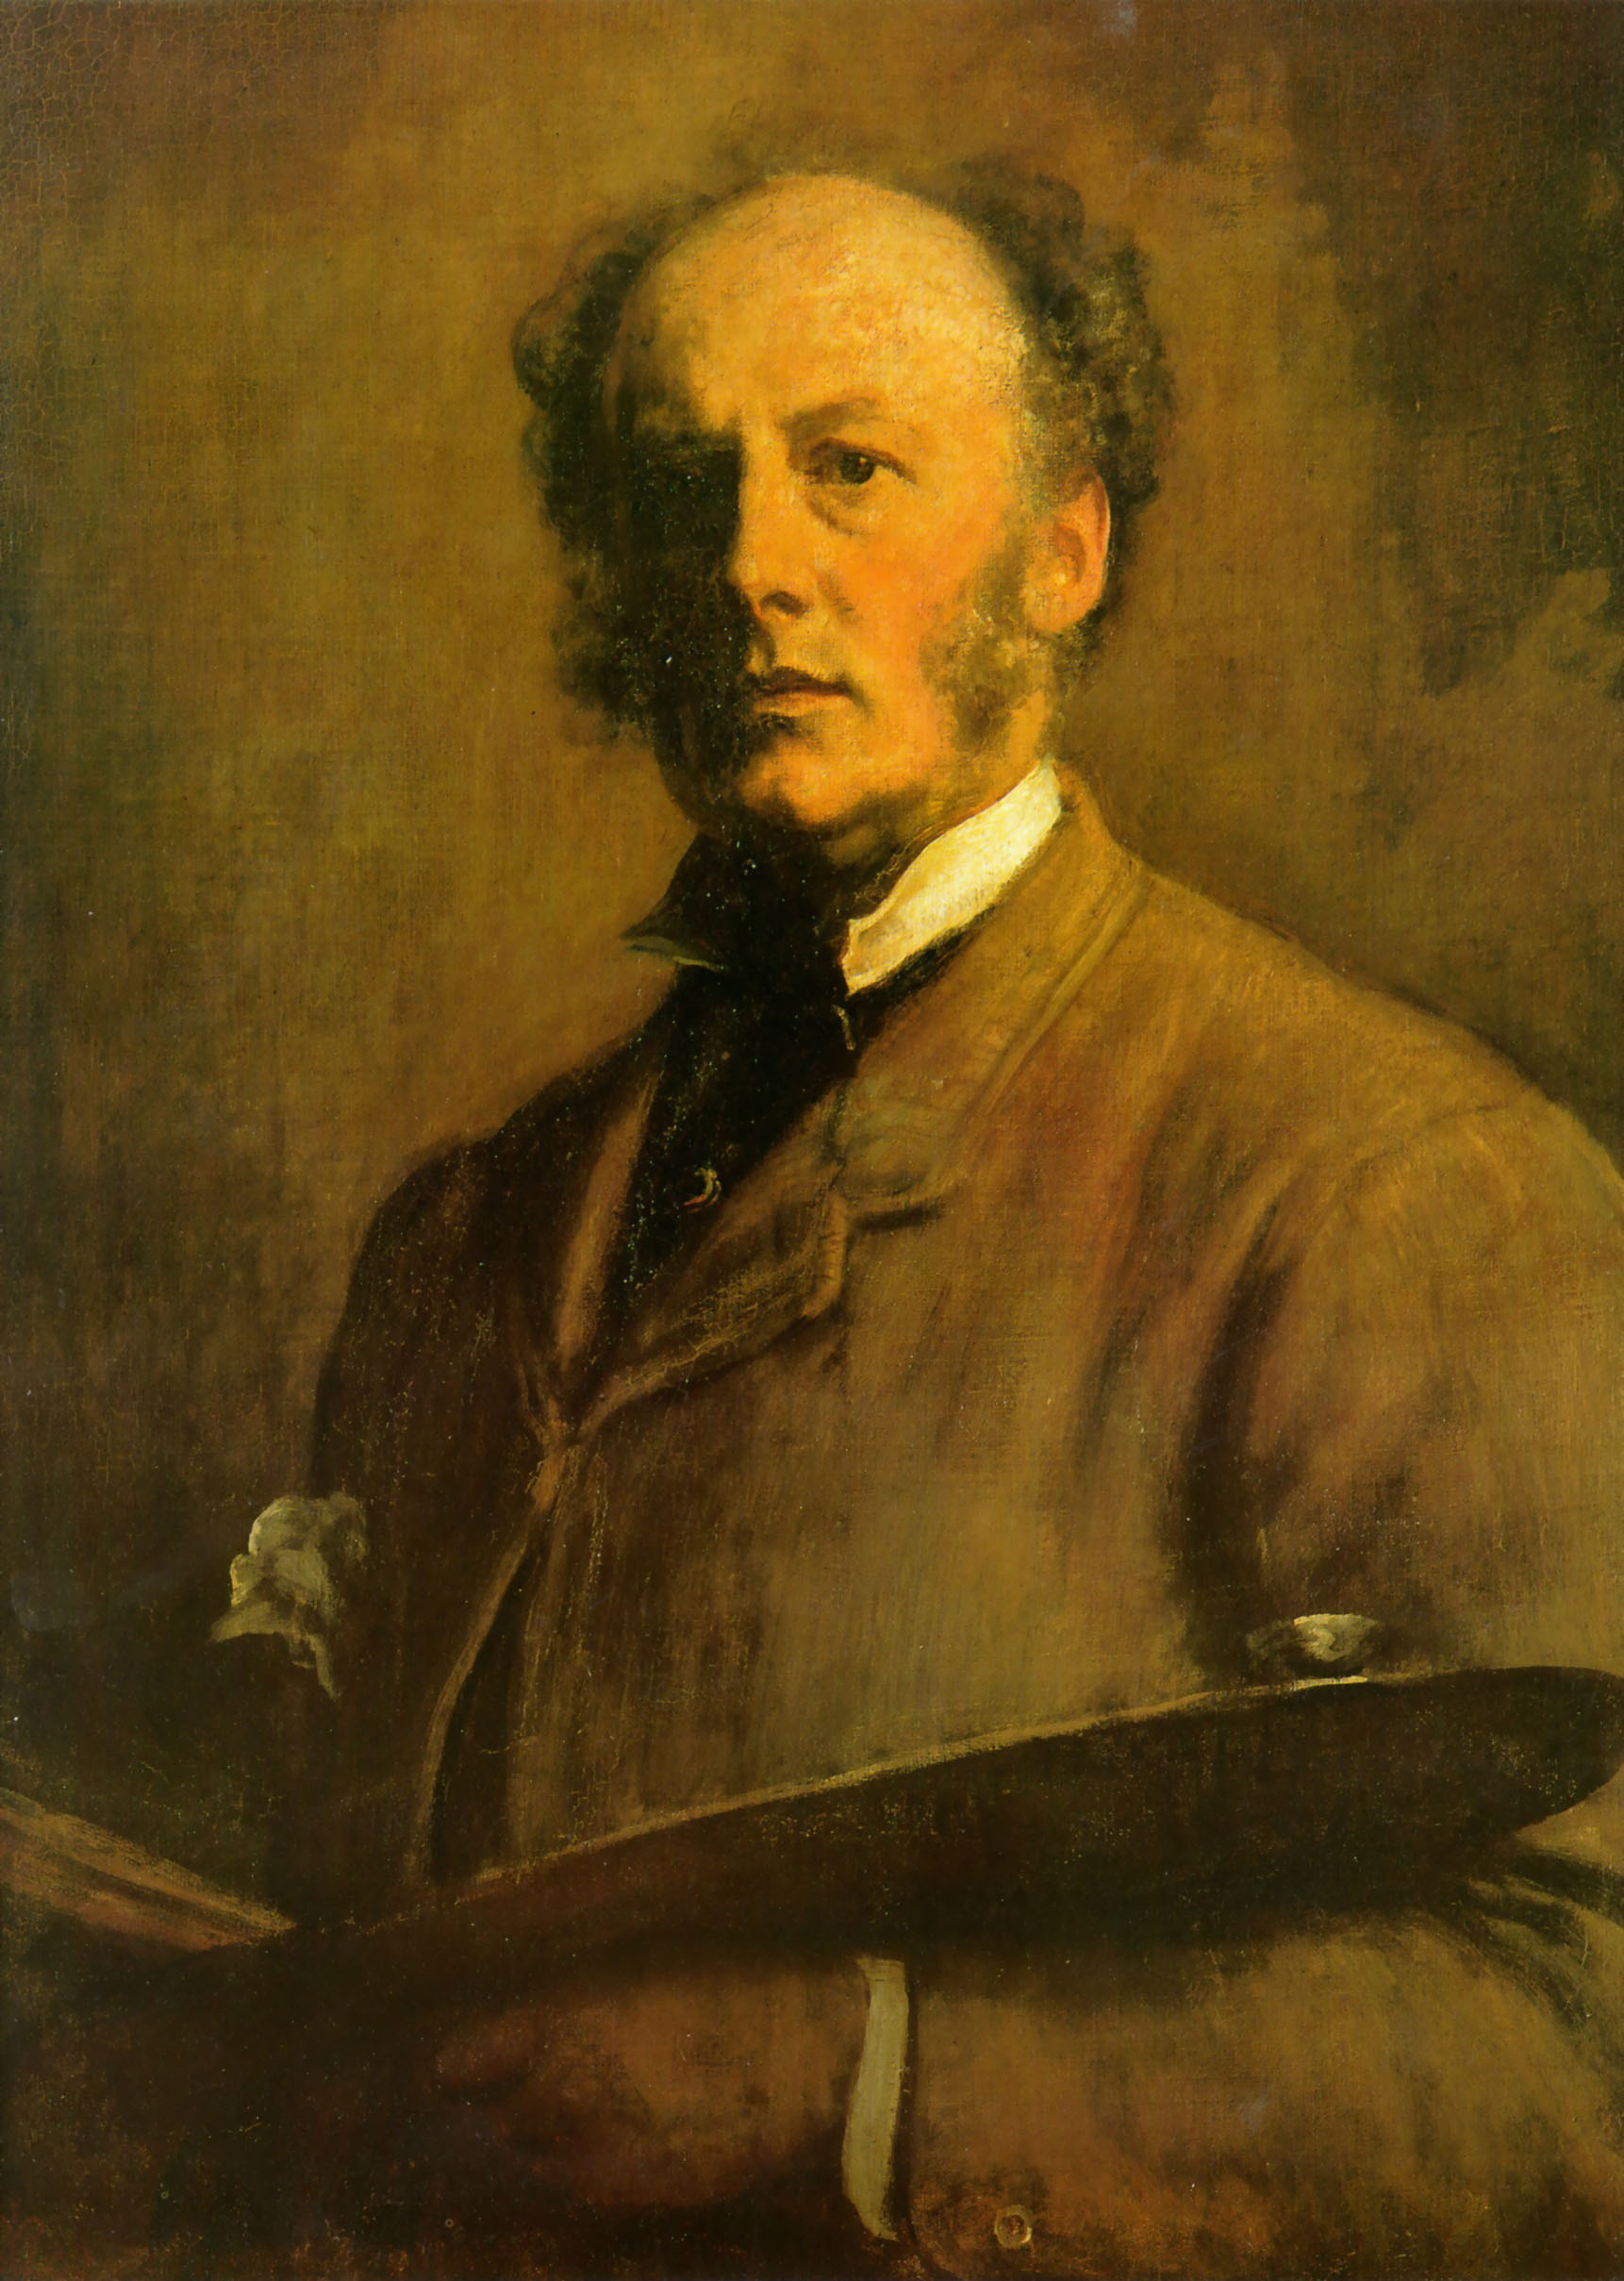 John Everett Millais - June 8, 1829 - August 13, 1896